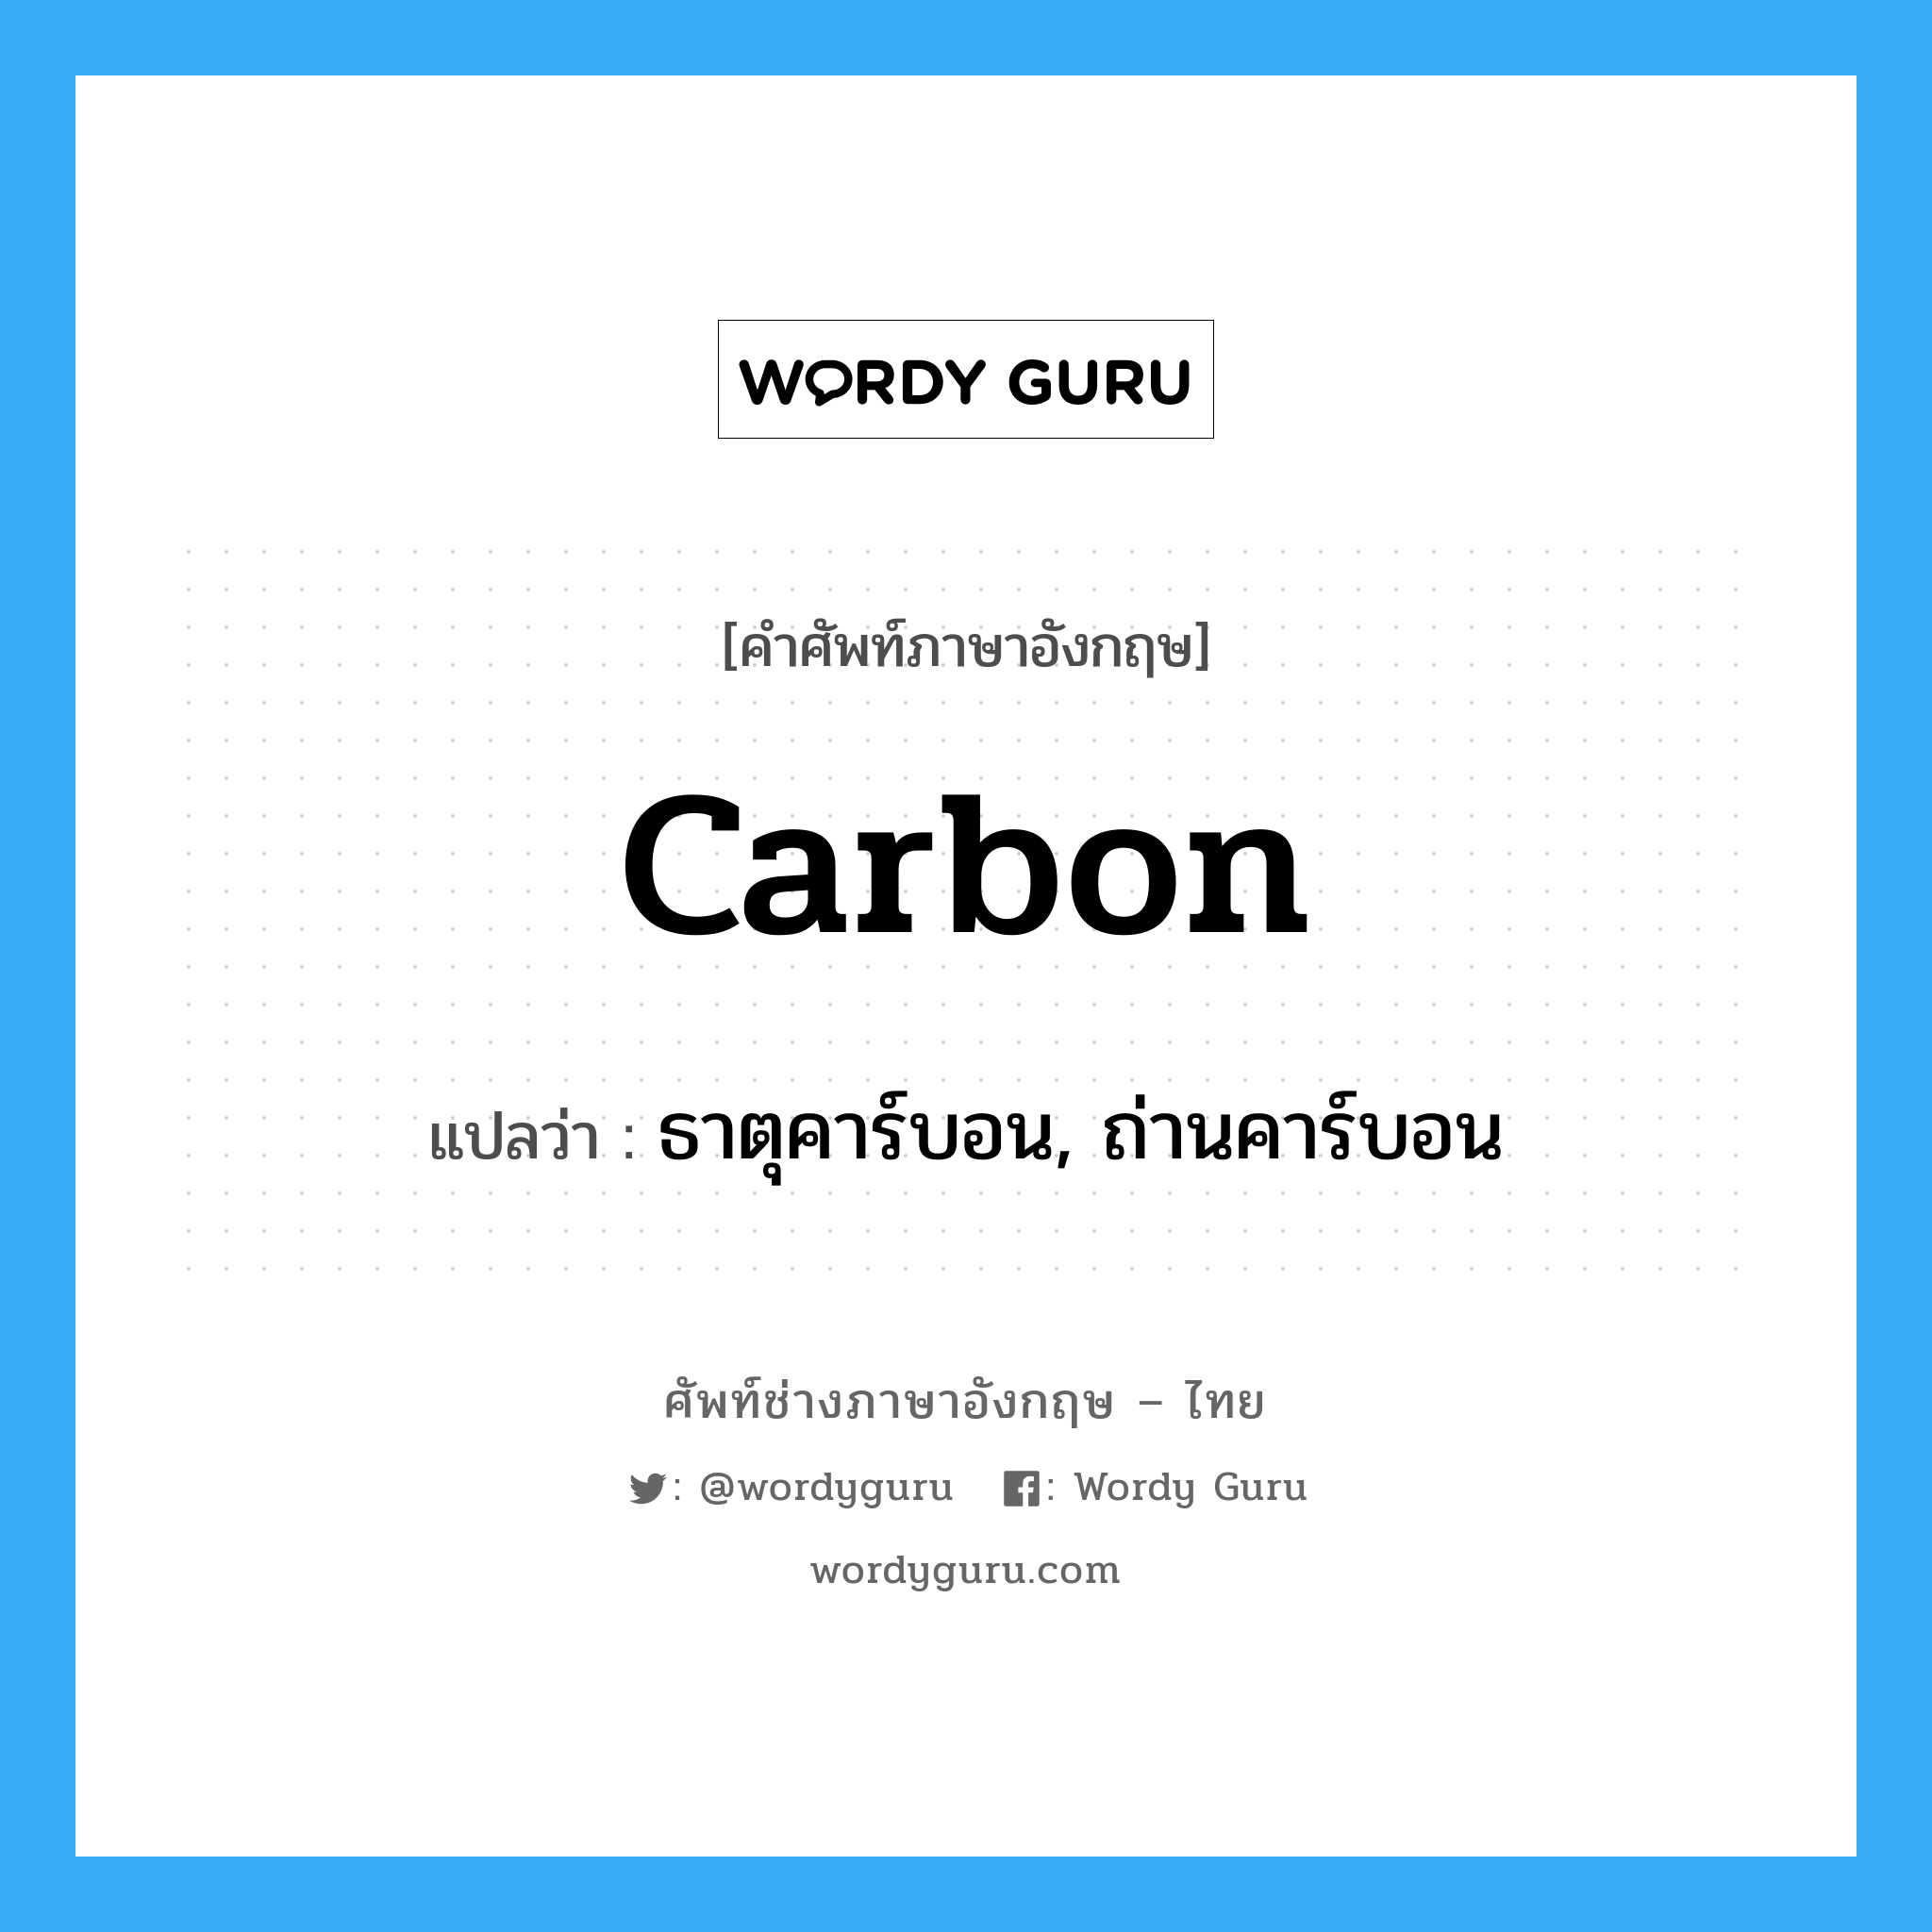 carbon แปลว่า?, คำศัพท์ช่างภาษาอังกฤษ - ไทย carbon คำศัพท์ภาษาอังกฤษ carbon แปลว่า ธาตุคาร์บอน, ถ่านคาร์บอน